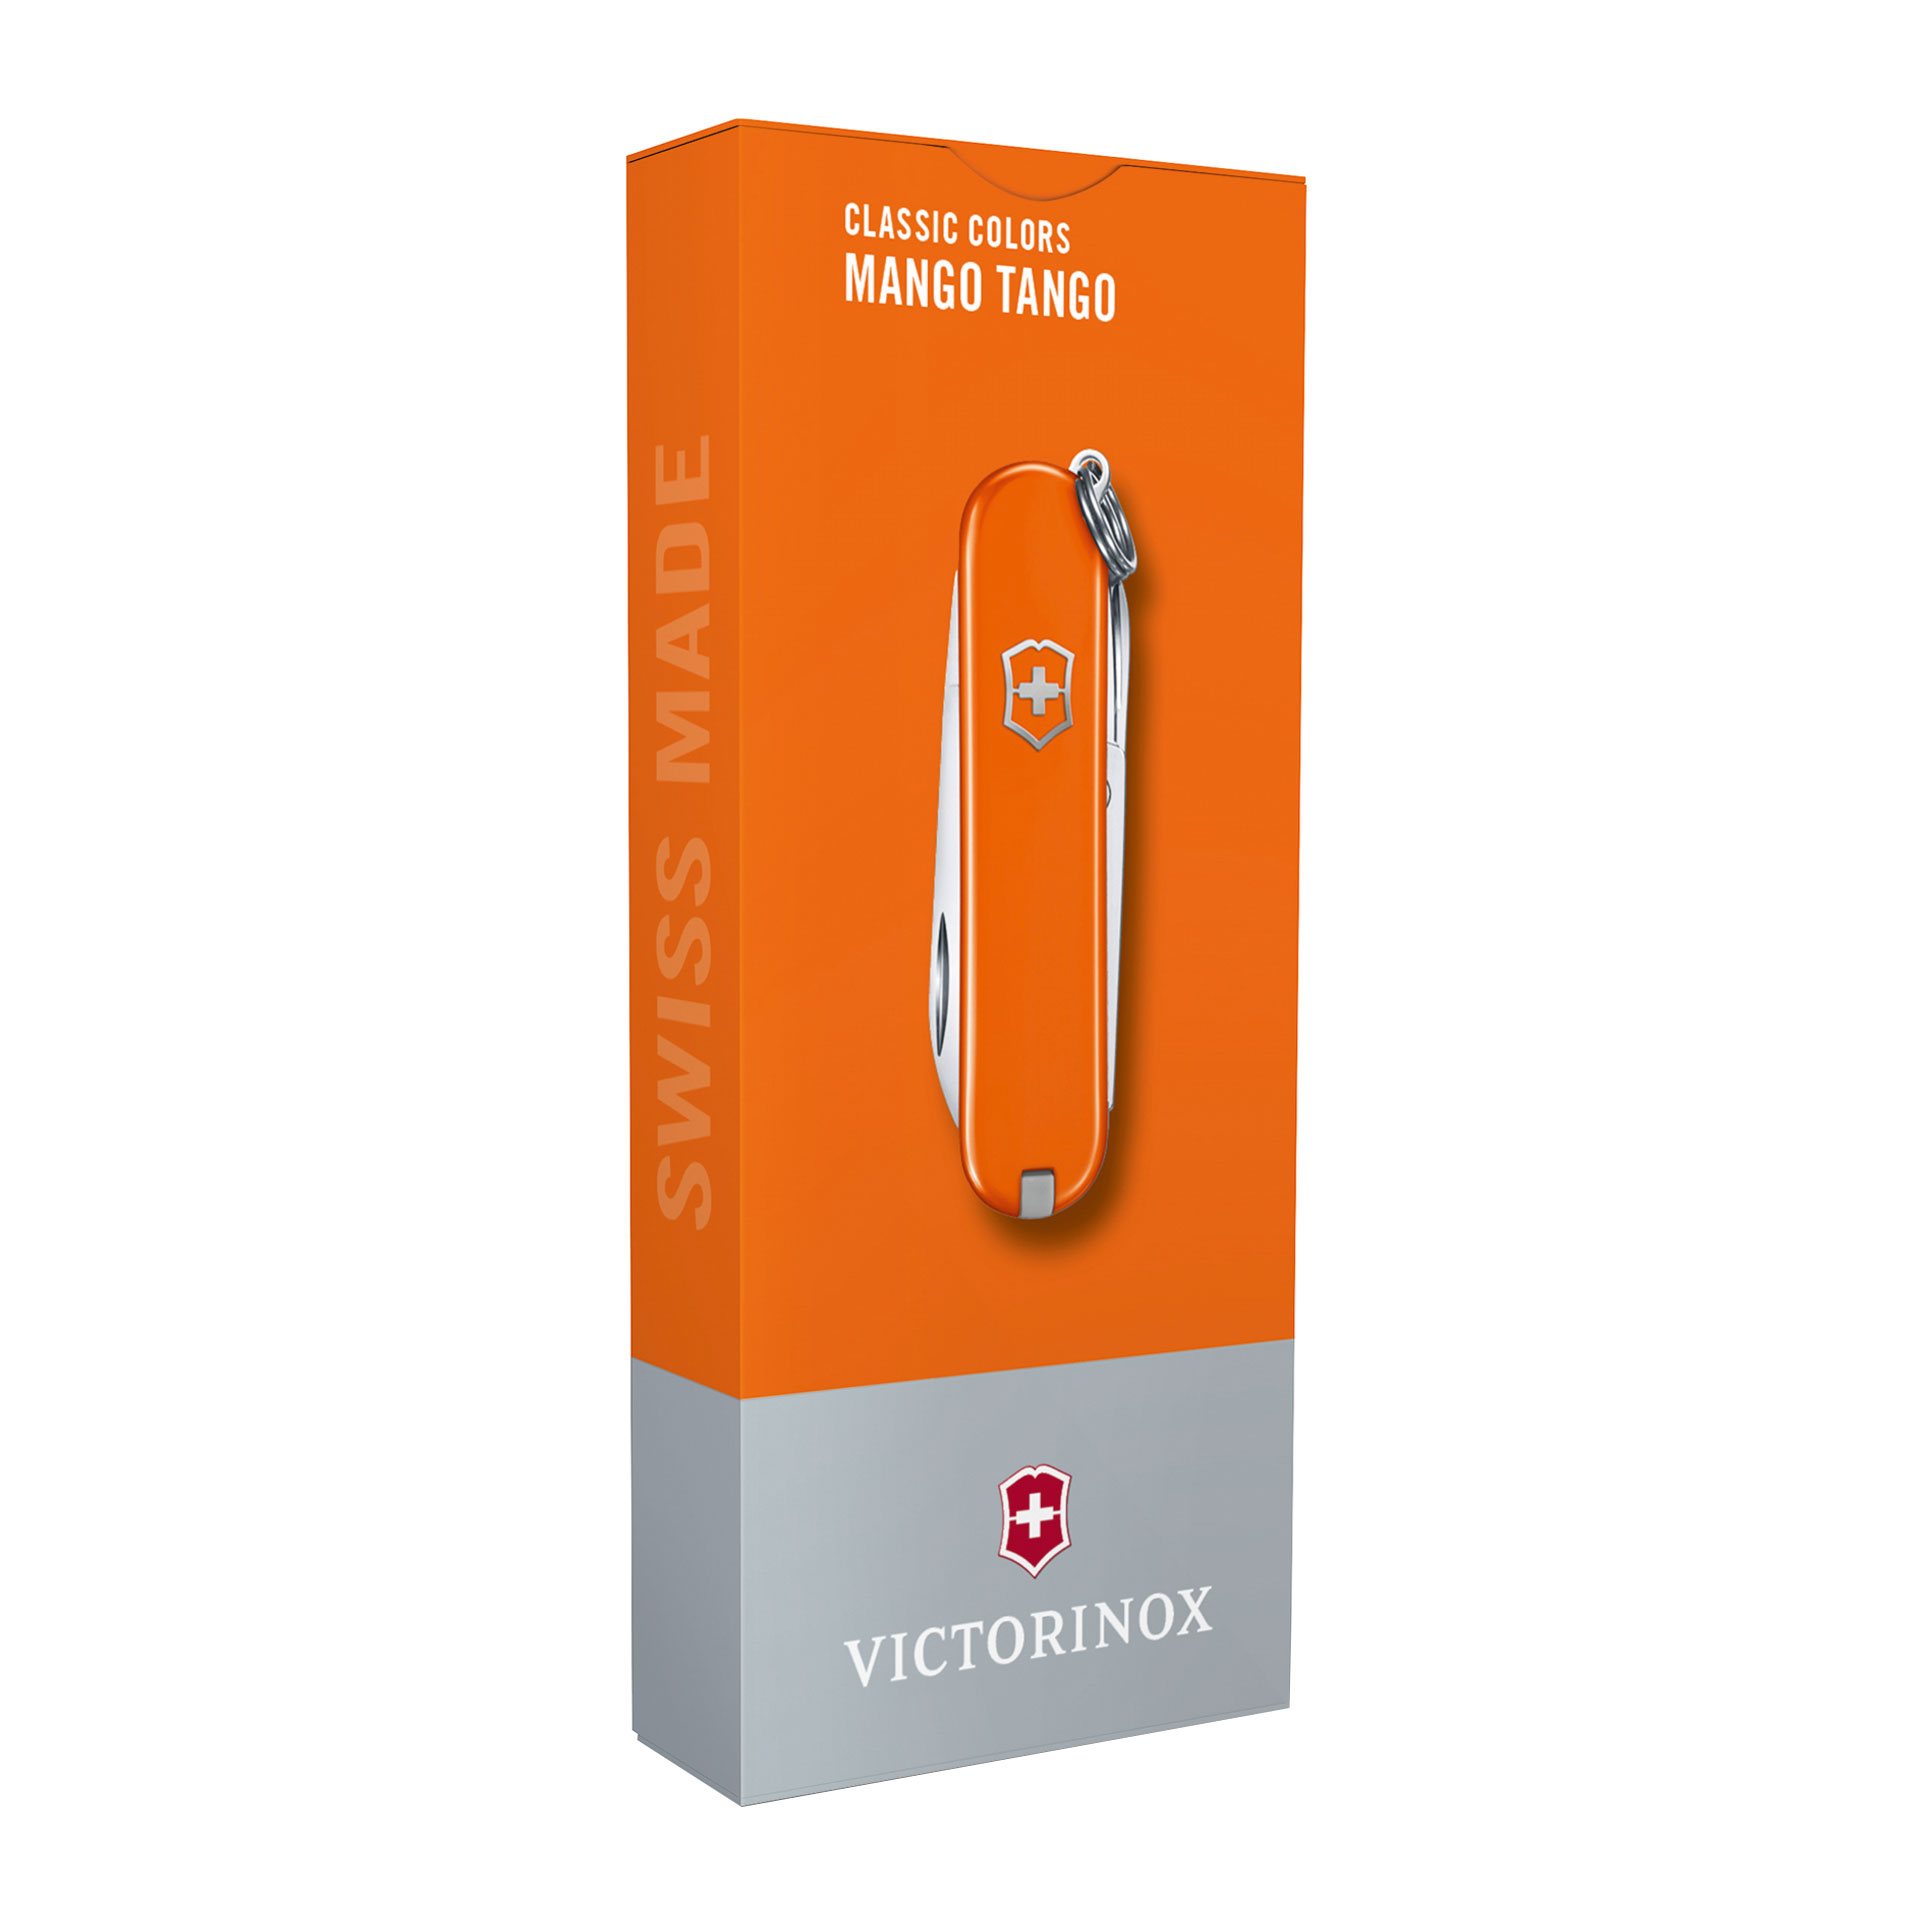 VICTORINOX Classic SD Taschenmesser mit 7 Funktionen 58mm mango tango